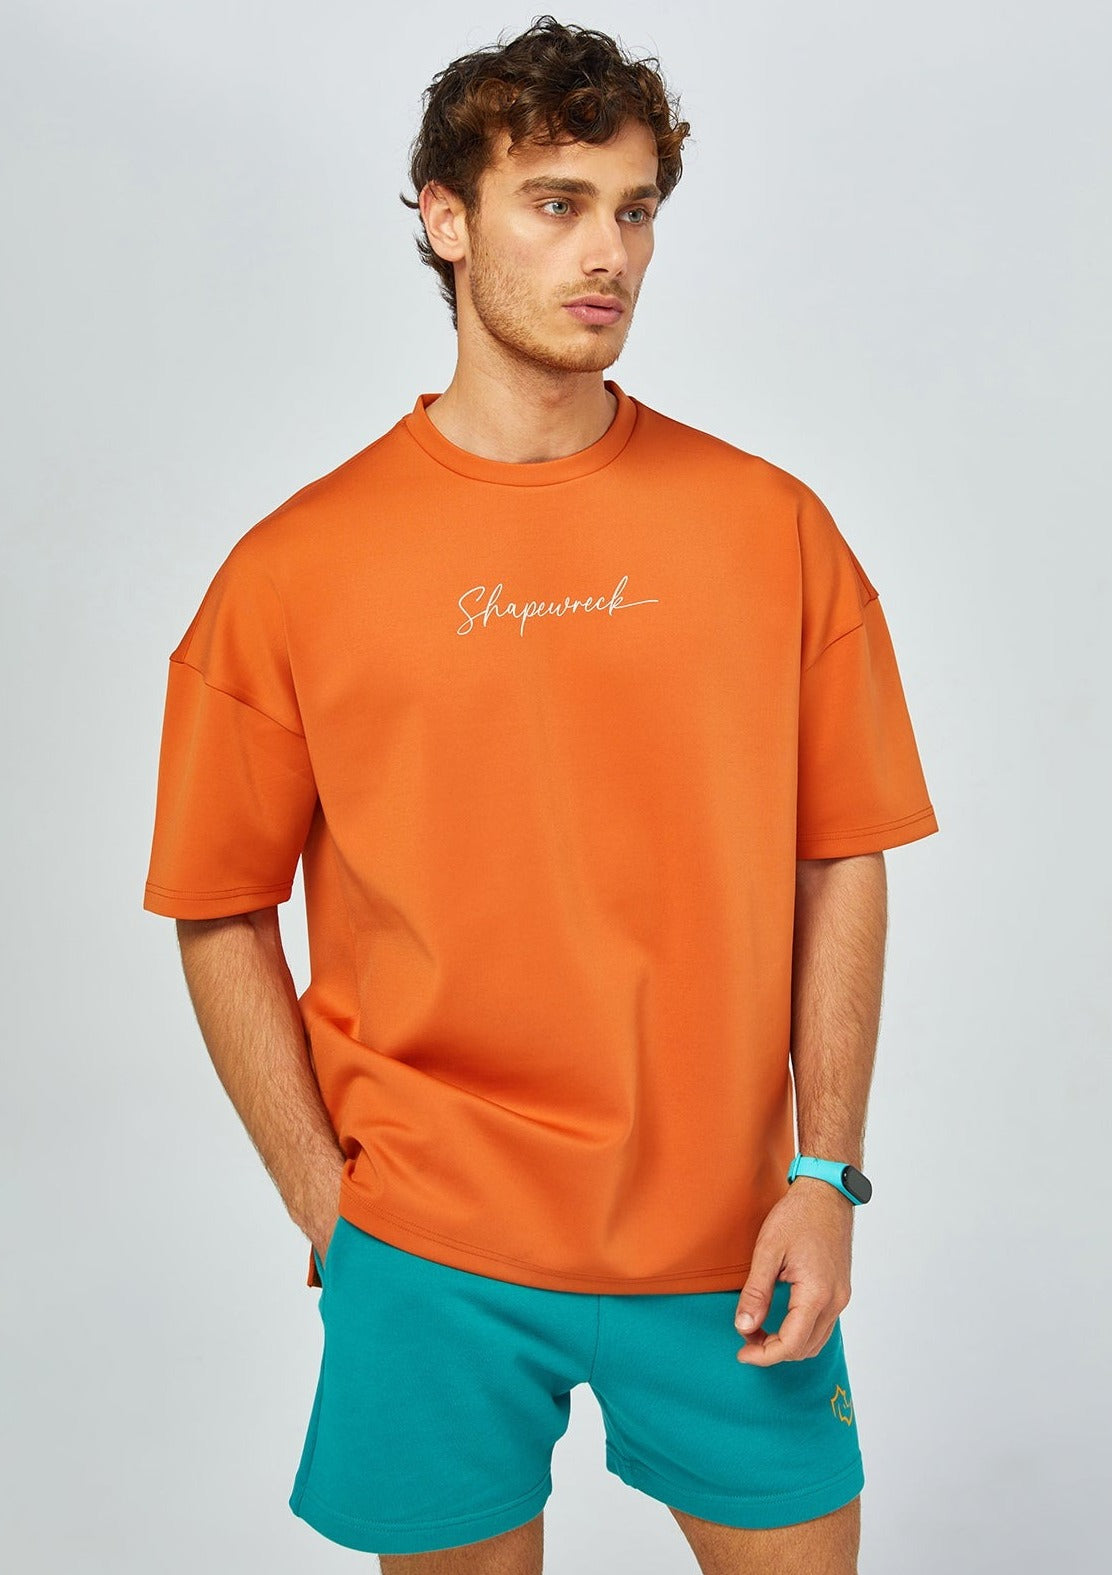 Shapewreck Signature Tshirts OVERSIZE SIGNATURE TSHIRT